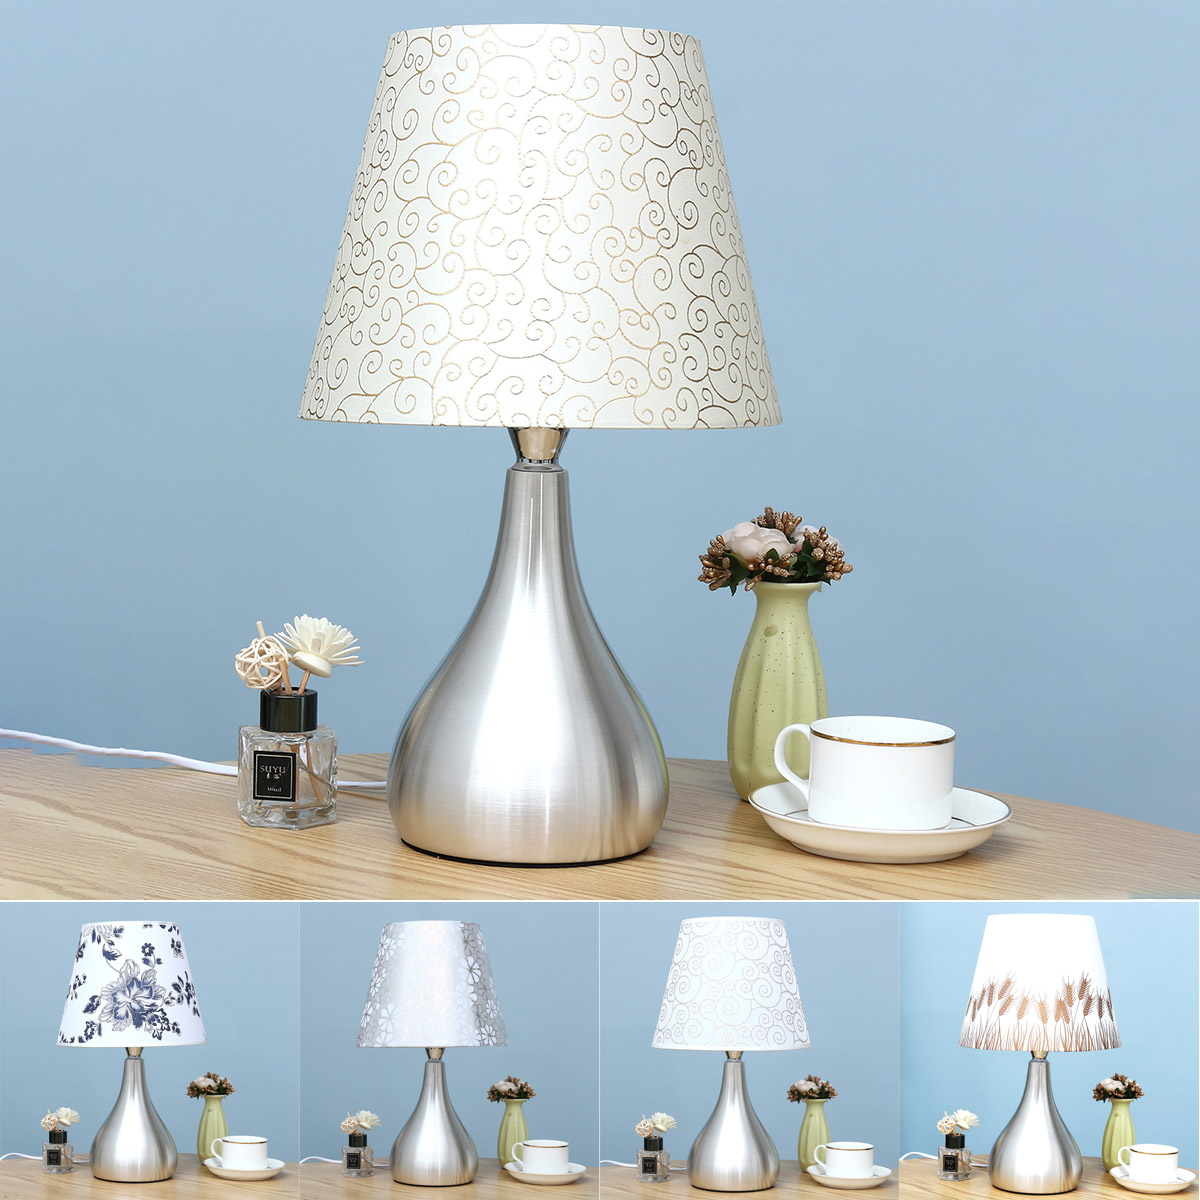 American-Creative-Iron-Art-Bedside-Desk-Lamp-for-Bedroom-Dresser-Living-Room-Kids-Room-College-Dorm-1841347-8